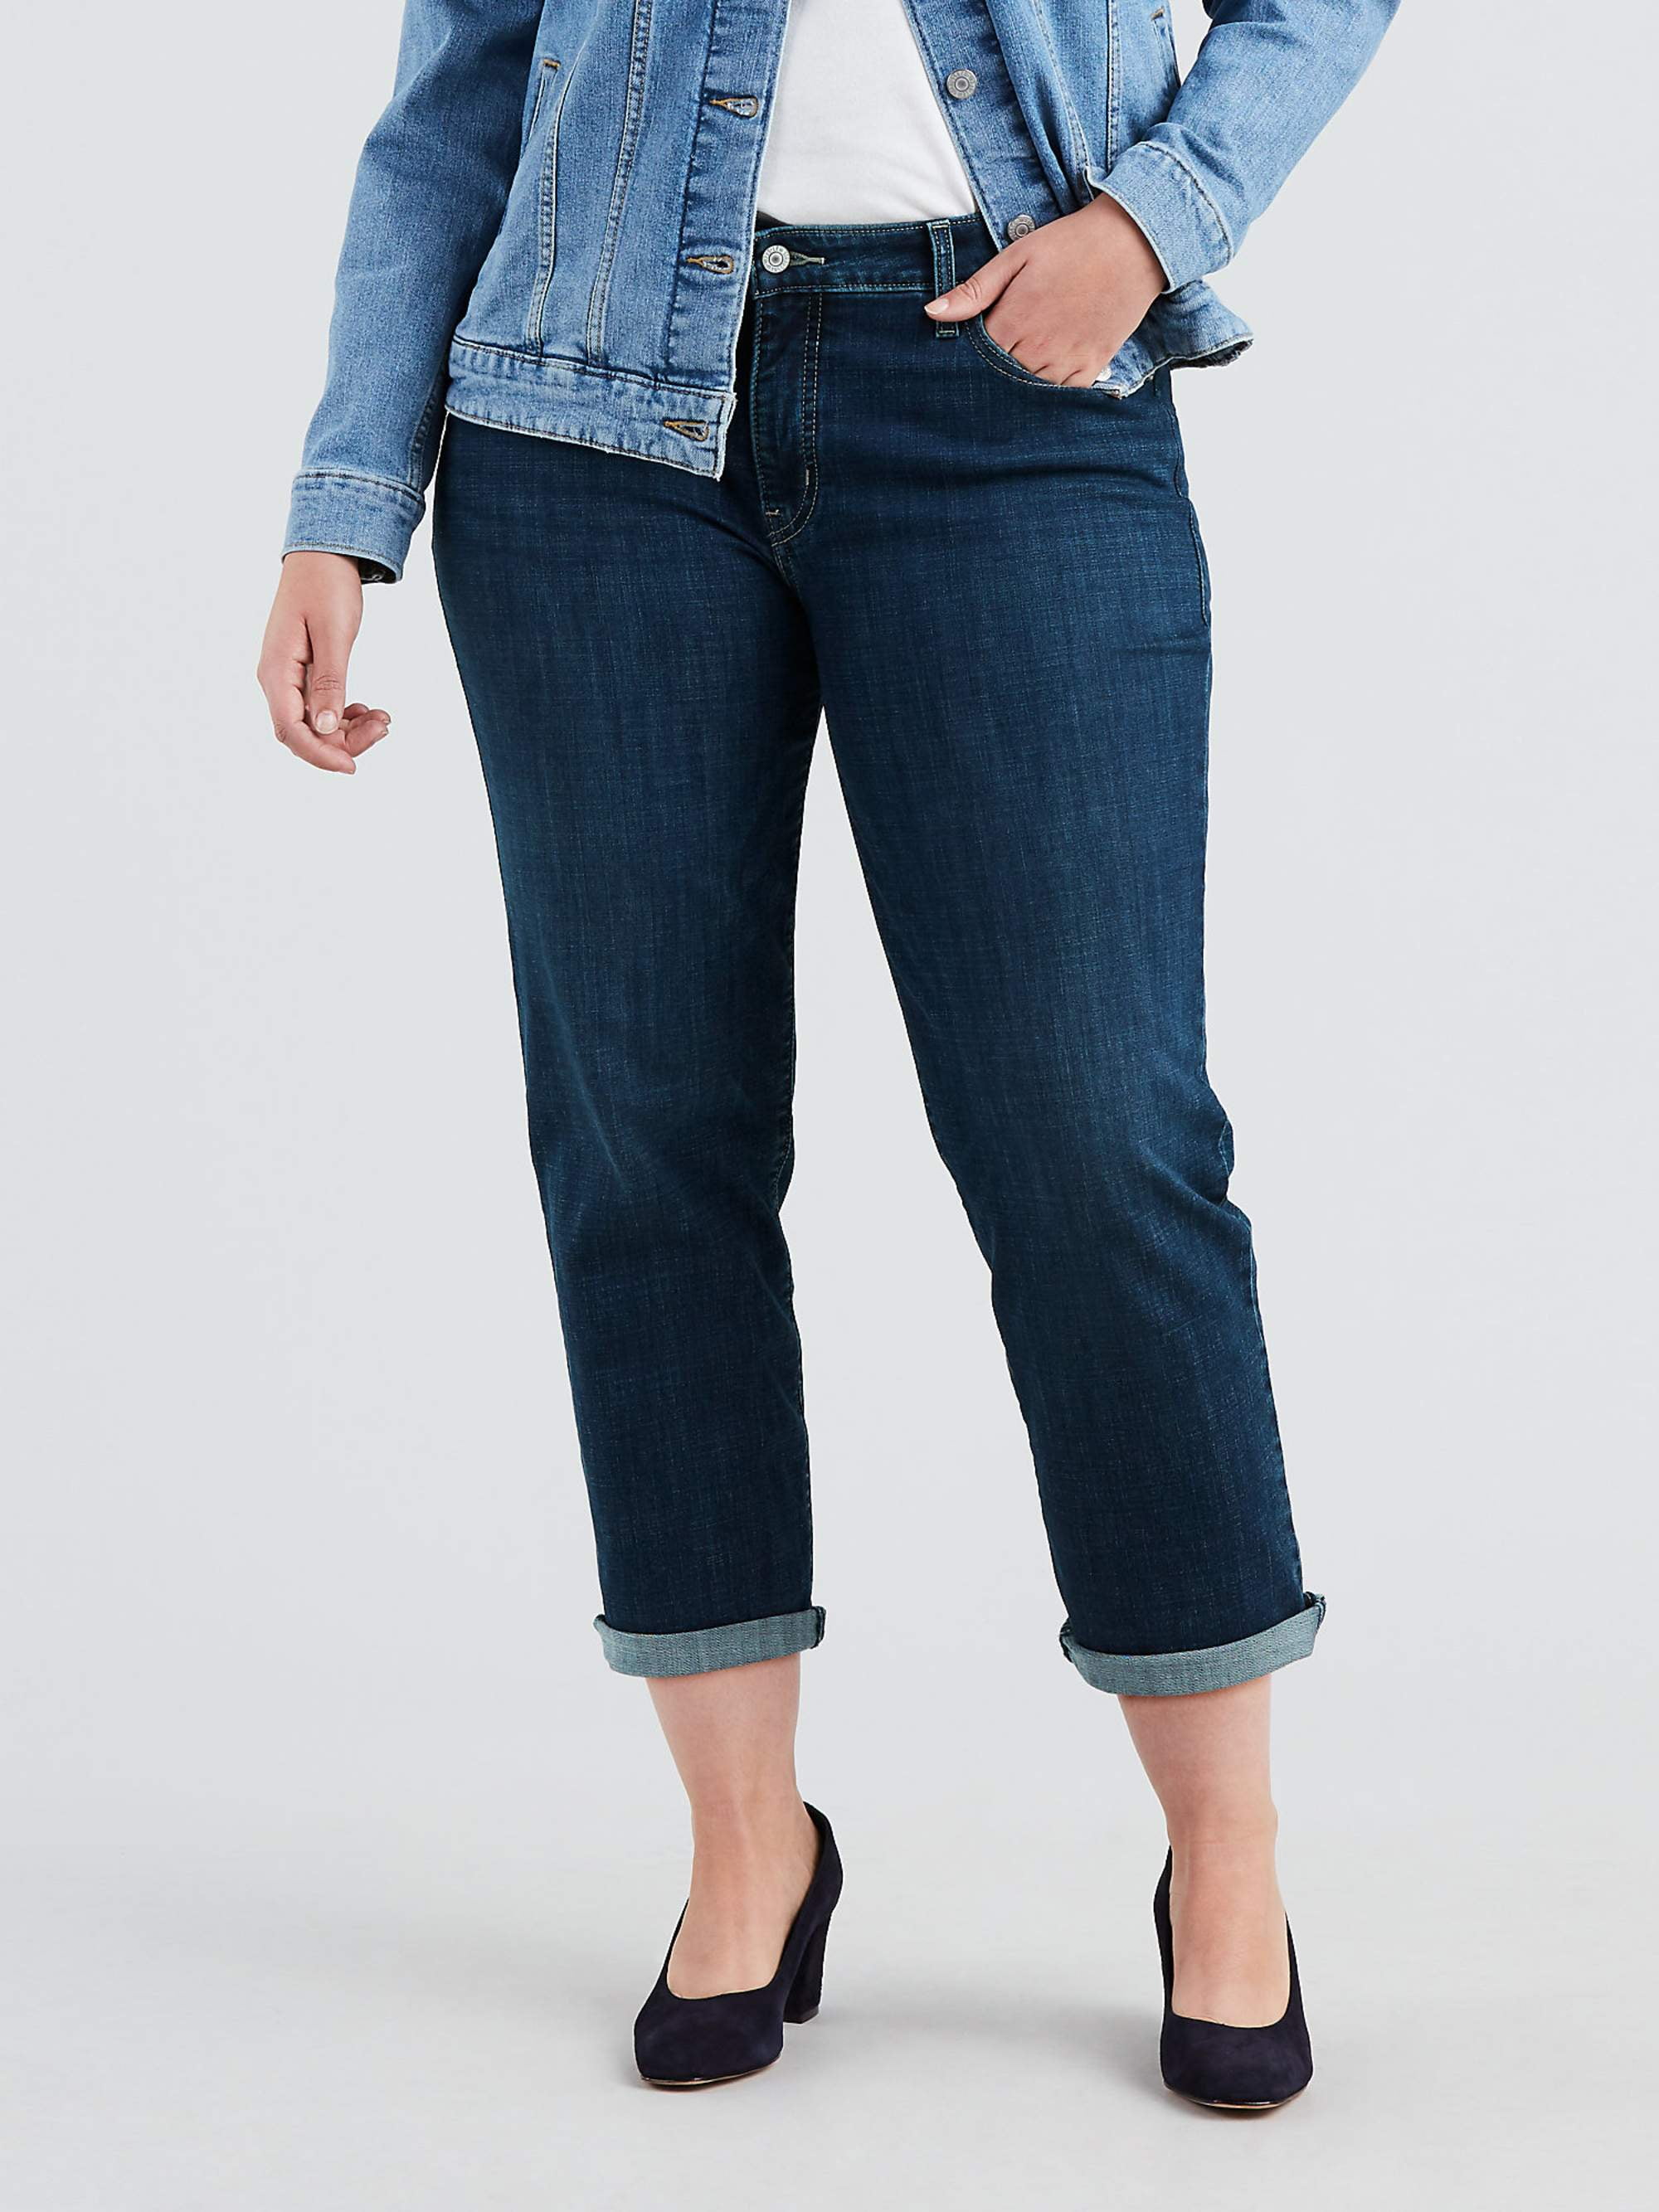 Levis Plus Size Mid Rise Jeans - Walmart.com